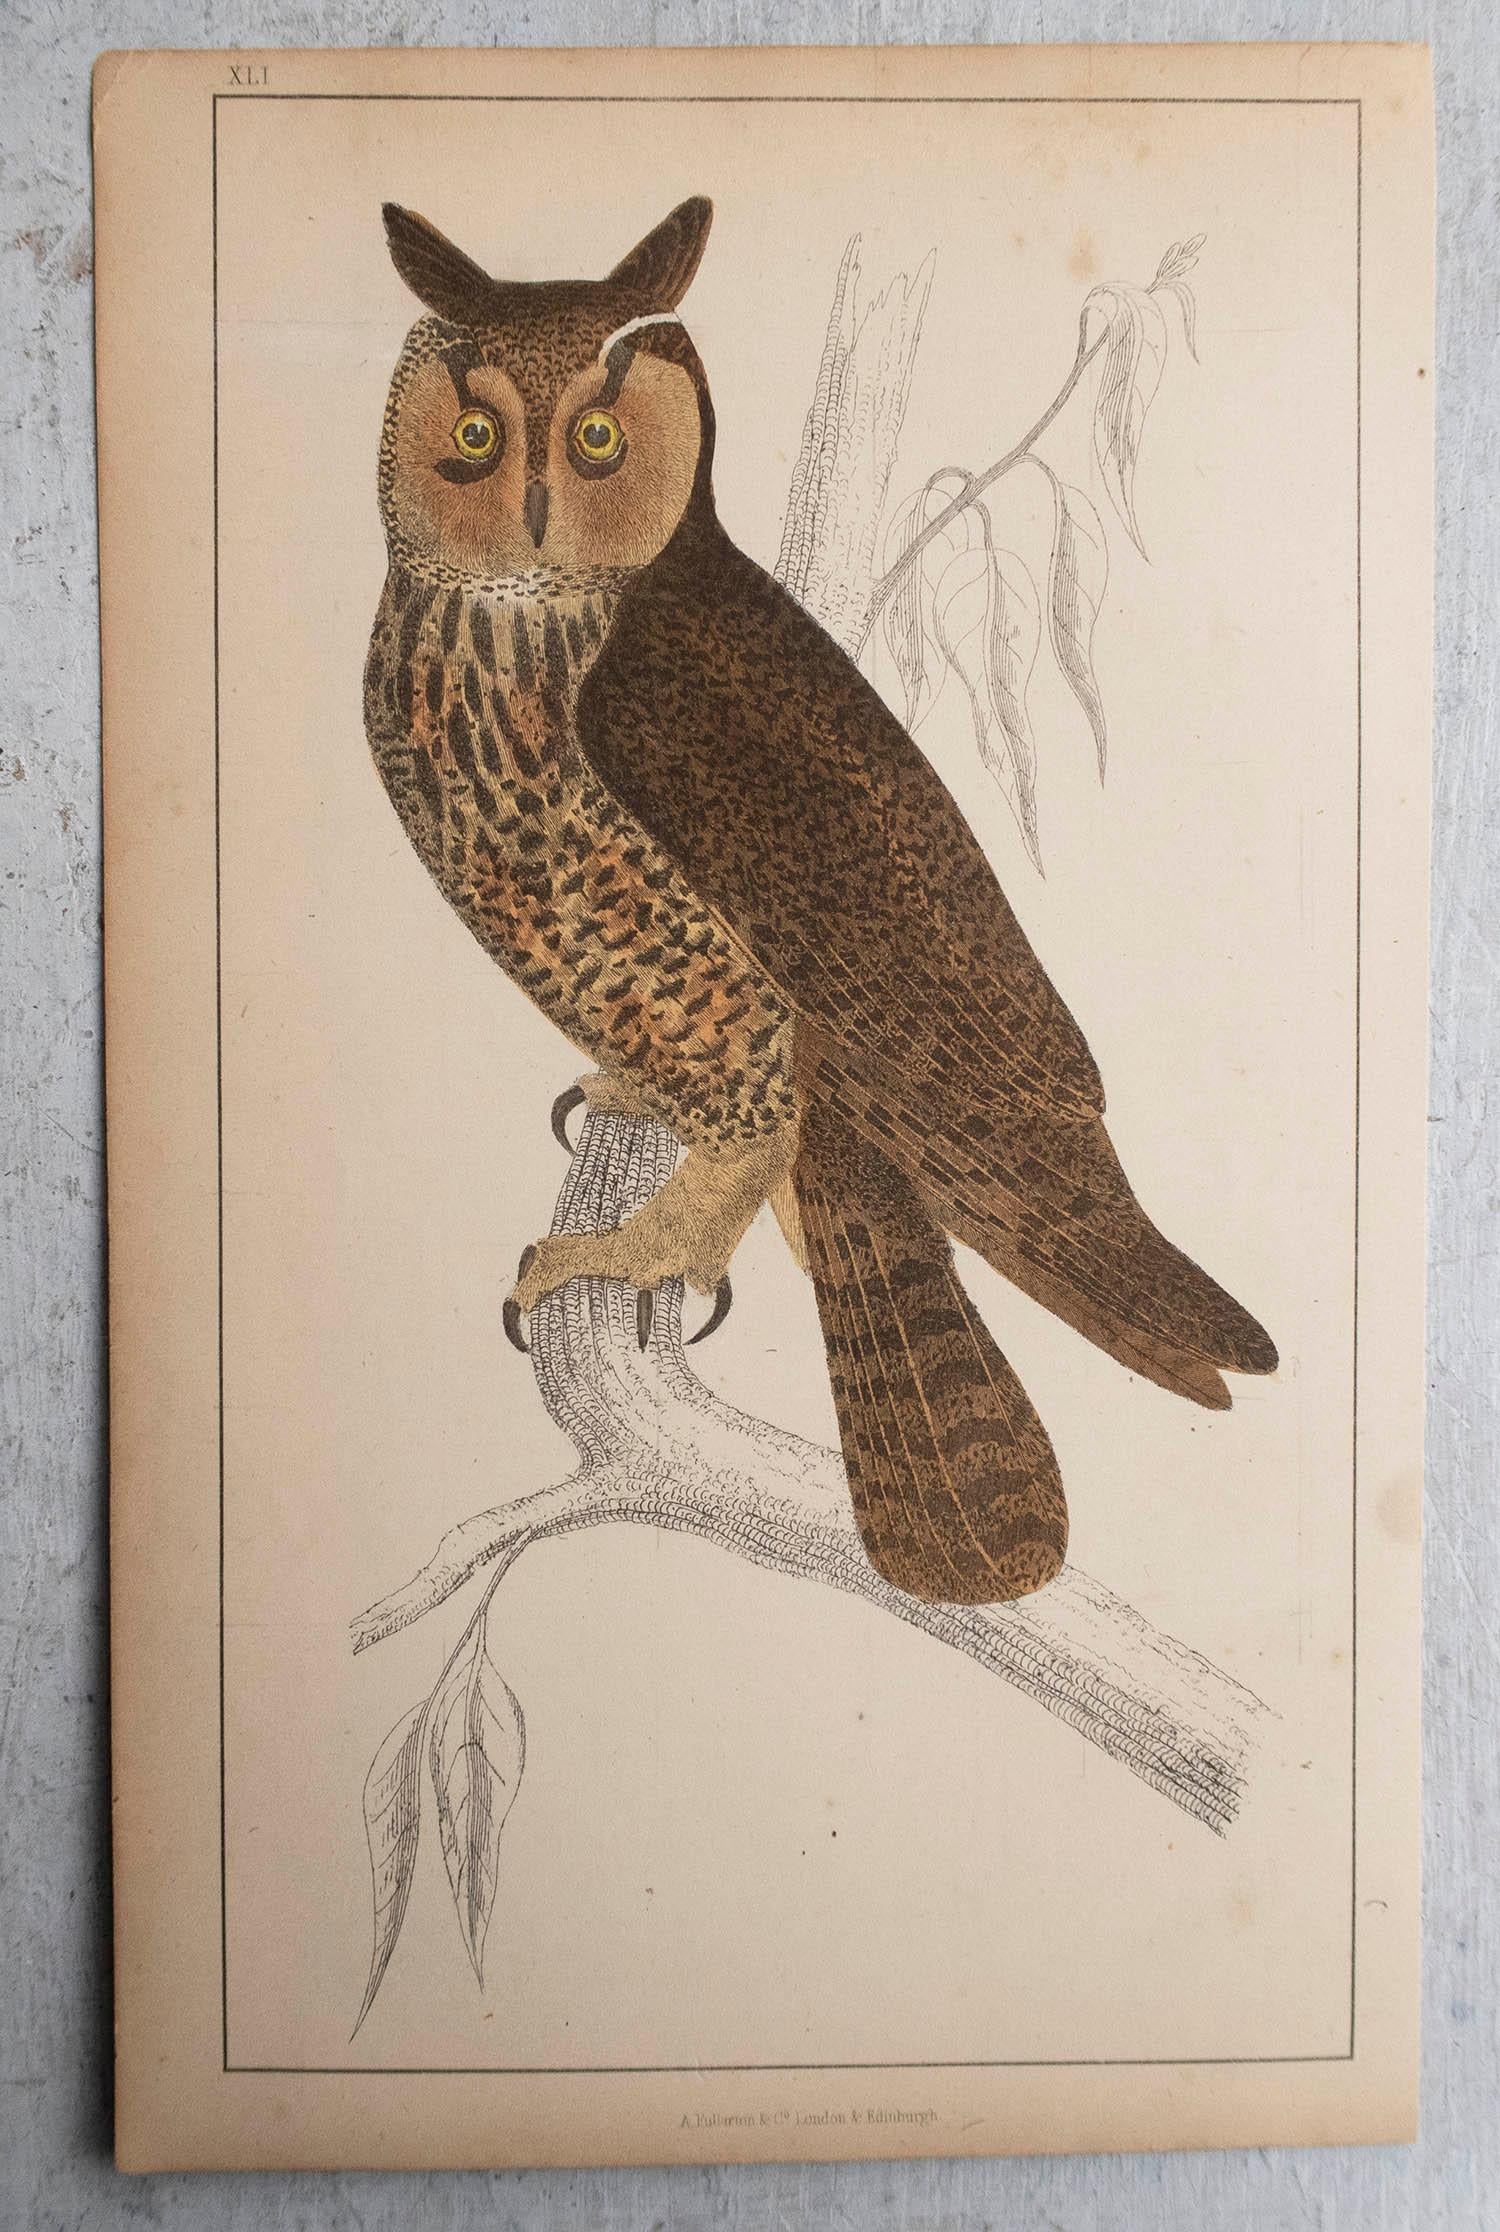 English Original Antique Print of an Owl, 1847 'Unframed'